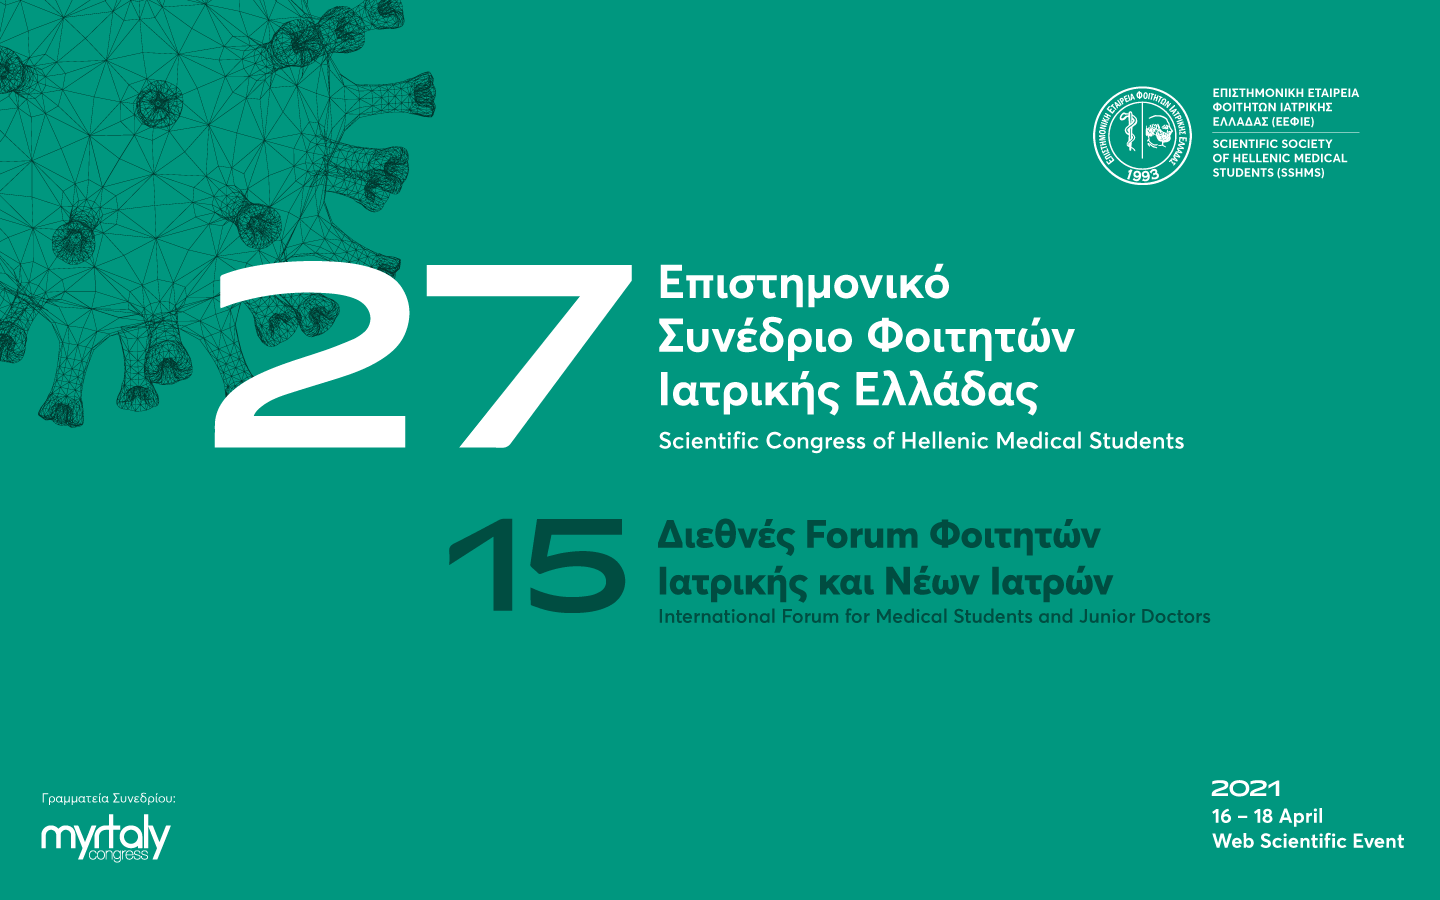 27ο Επιστημονικό Συνέδριο Φοιτητών Ιατρικής Ελλάδας